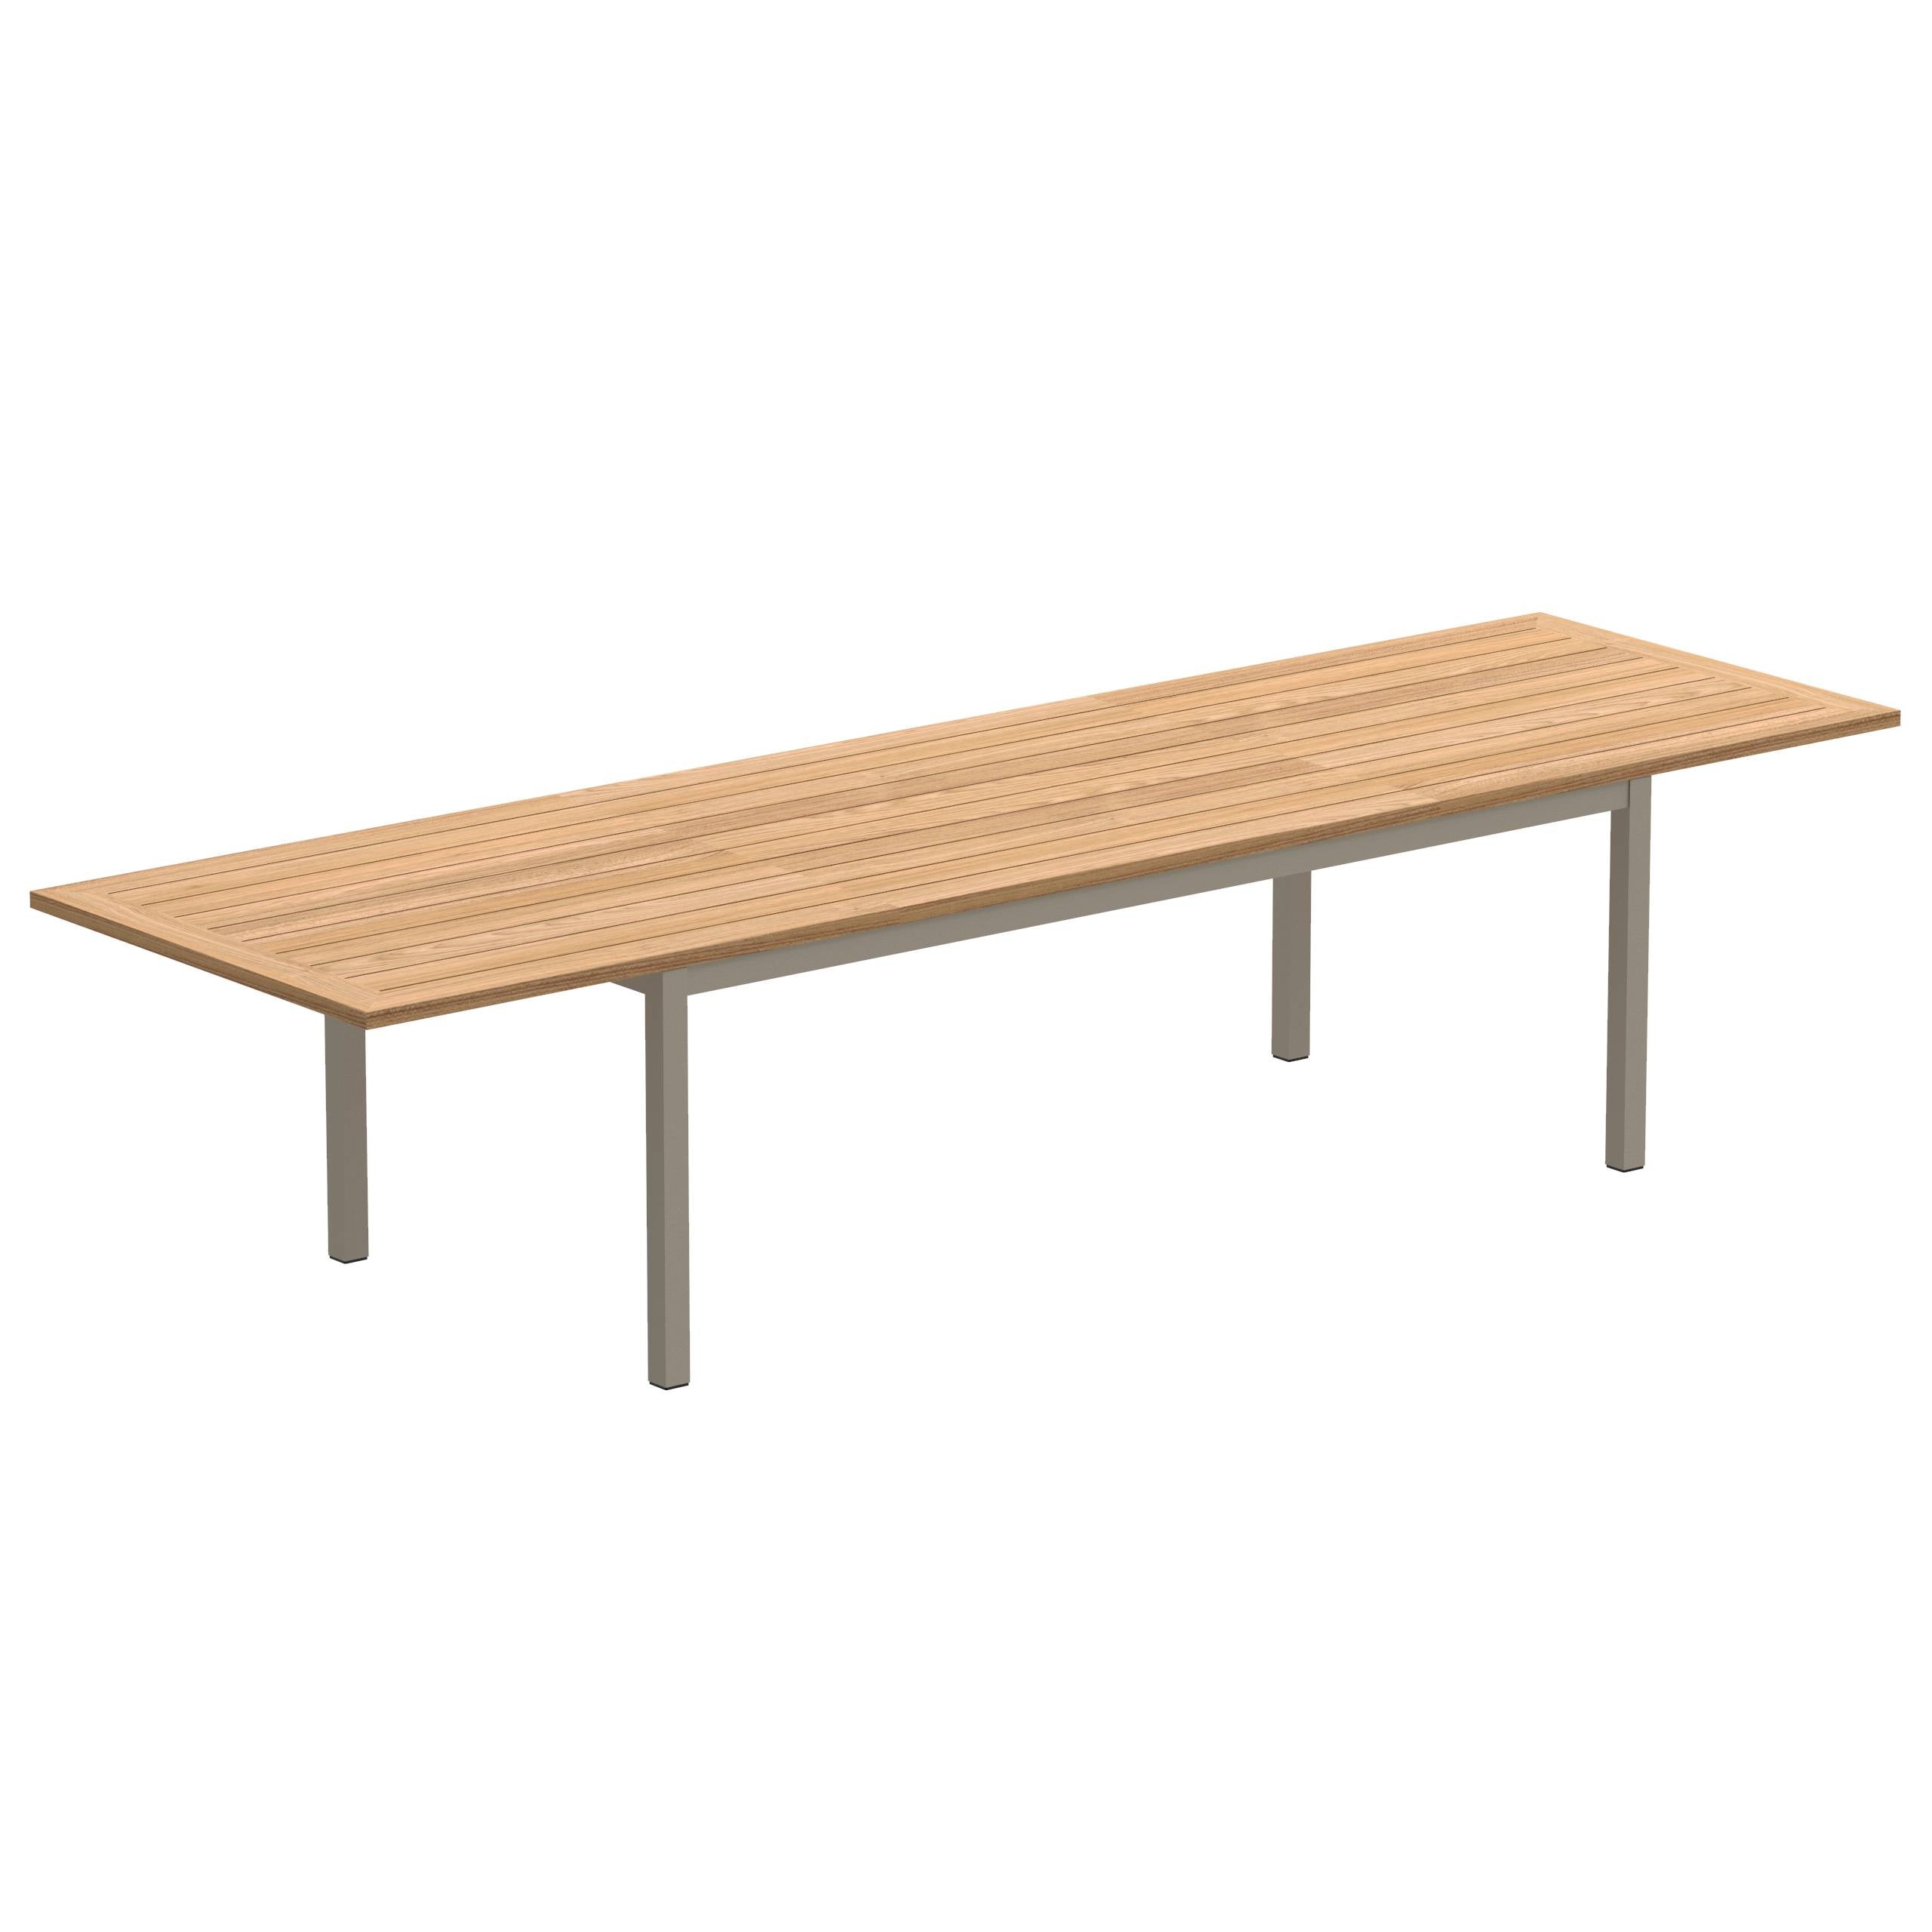 Taboela Extendable Table 100x220/340cm Sand With Teak Tabletop